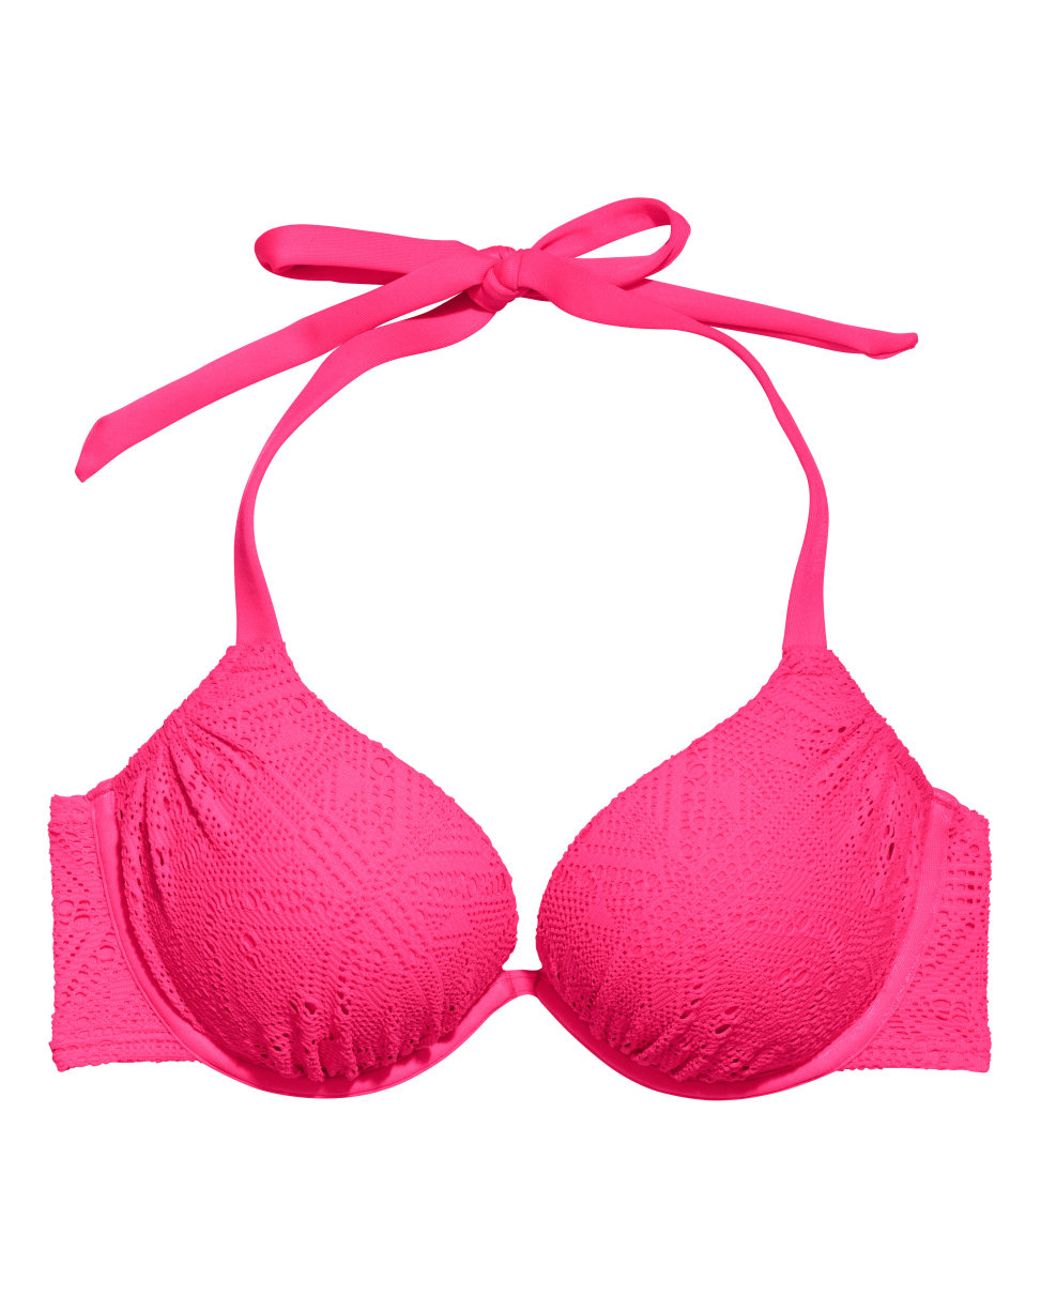 H&M Super Push-Up Bikini Top in Neon Pink (Pink) | Lyst Canada